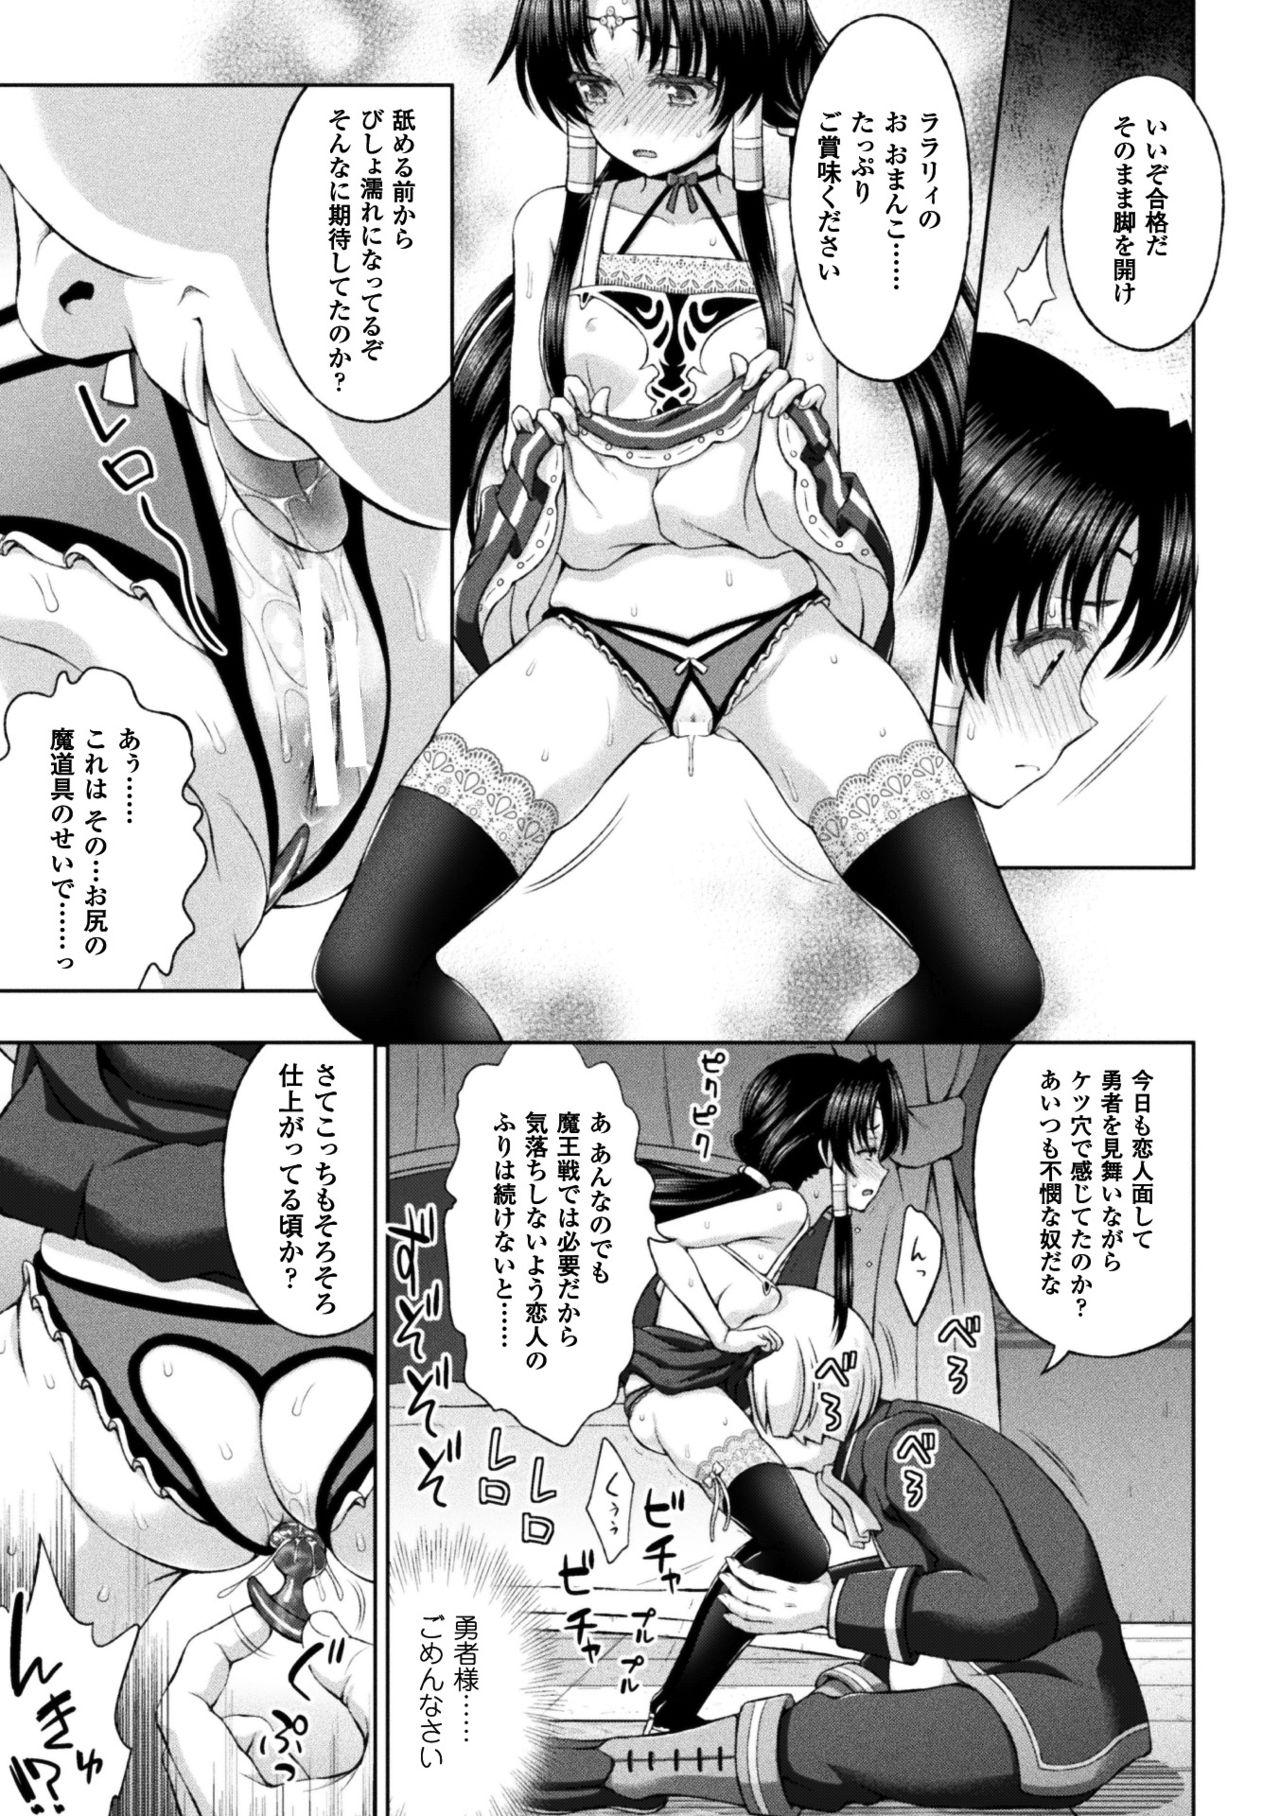 Seigi no Heroine Kangoku File Vol. 14 42